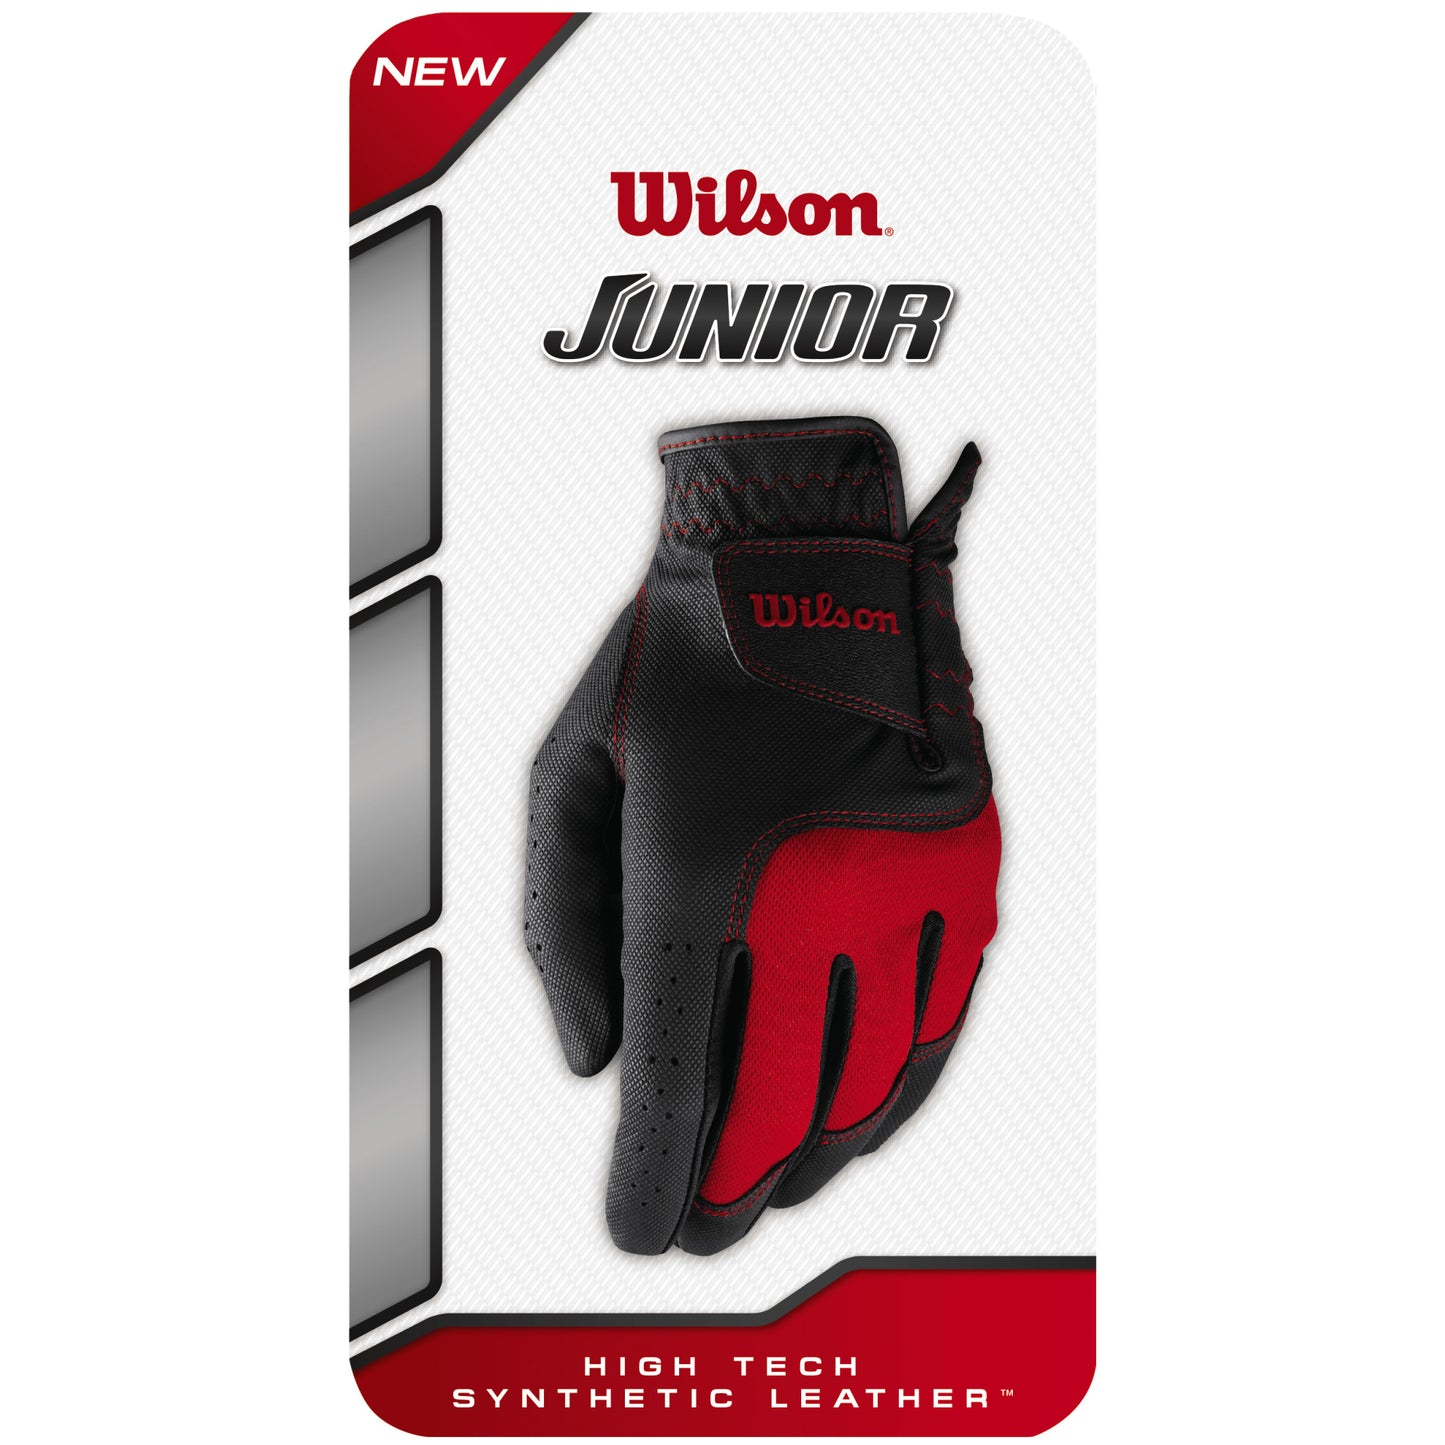 Wilson Junior Golf Glove, Black